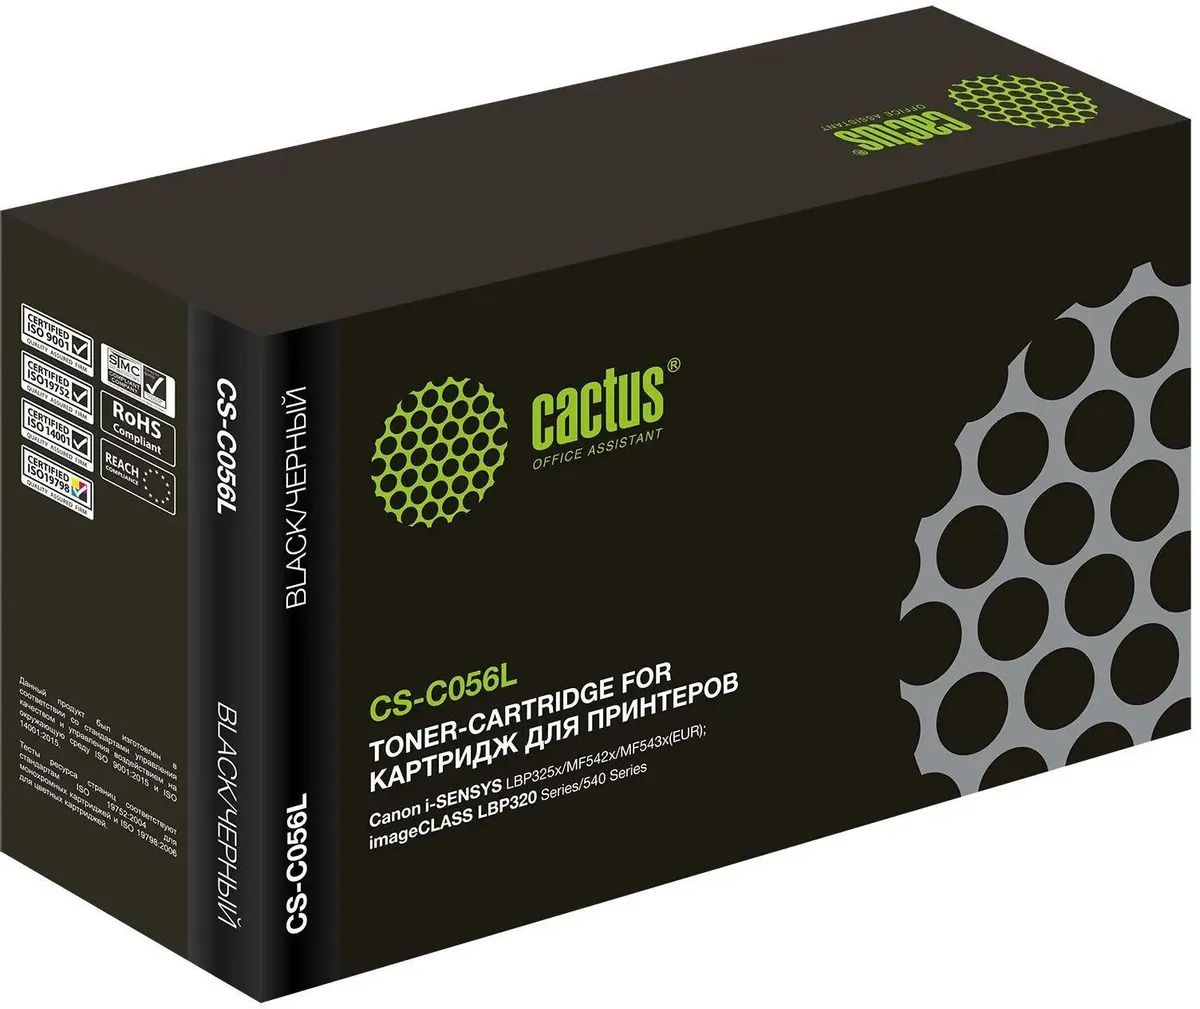 Картридж лазерный Cactus CS-C056L 056 L черный (5100стр.) для Canon imageCLASS LBP320 Series/540 Series цена и фото